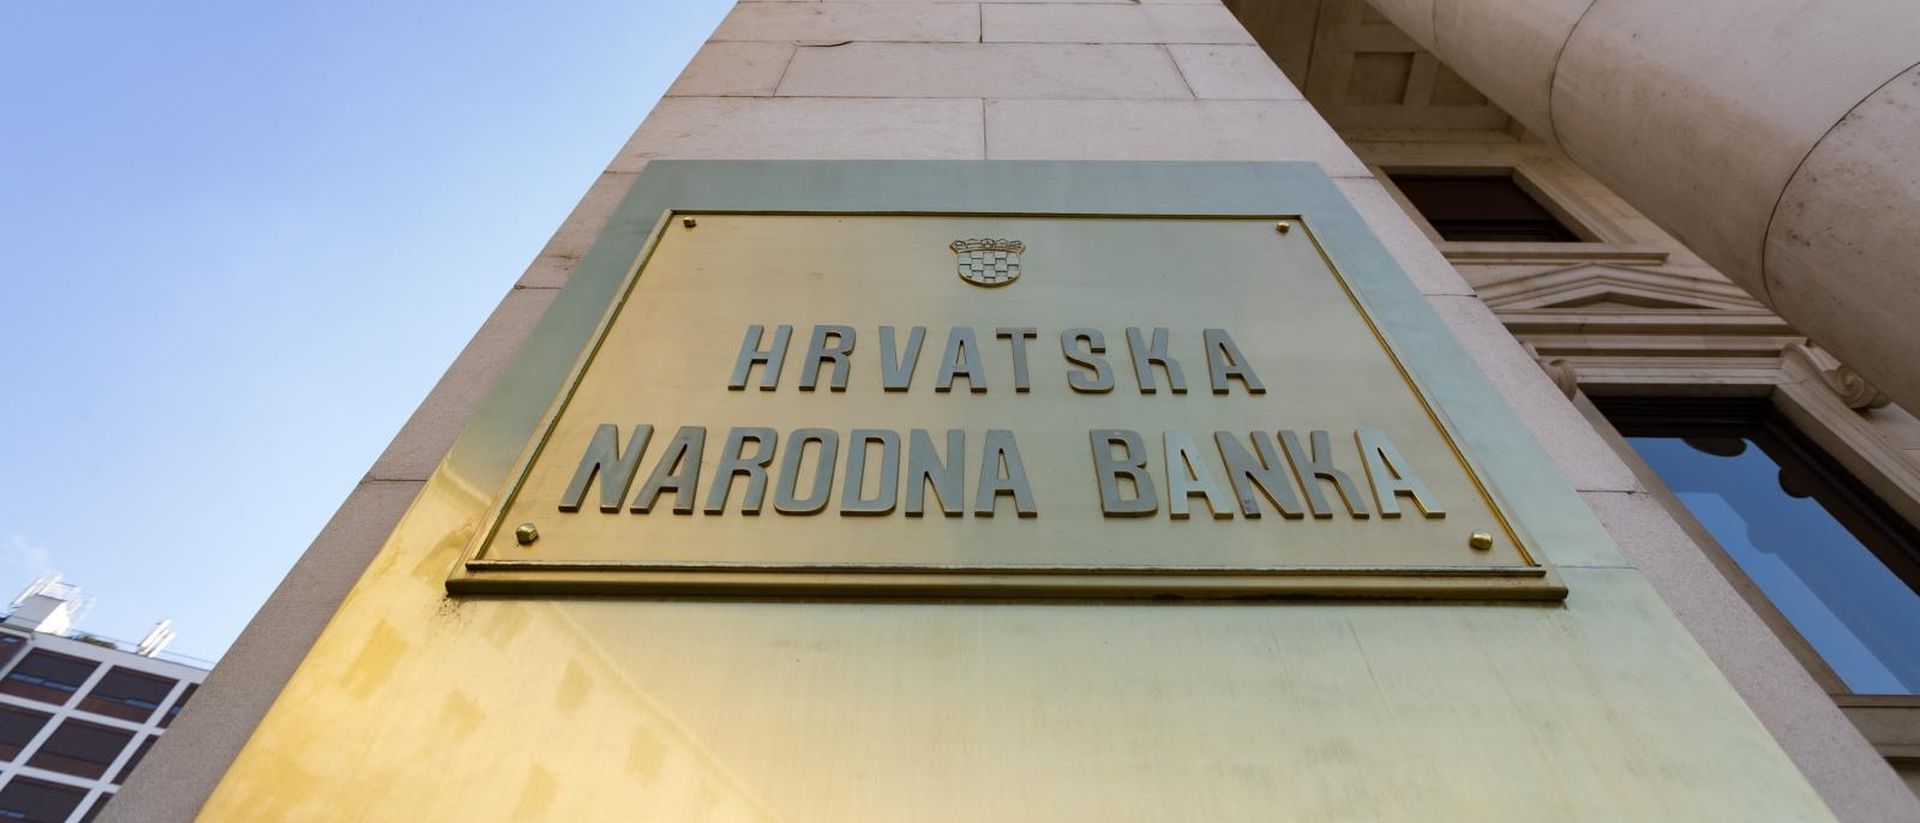 15.02.2018., Zagreb - Direkcija trezora Hrvatske narodne banke u kojoj se rade forenzicka ispitivanja nacionalne valute.
Photo: Davor Puklavec/PIXSELL